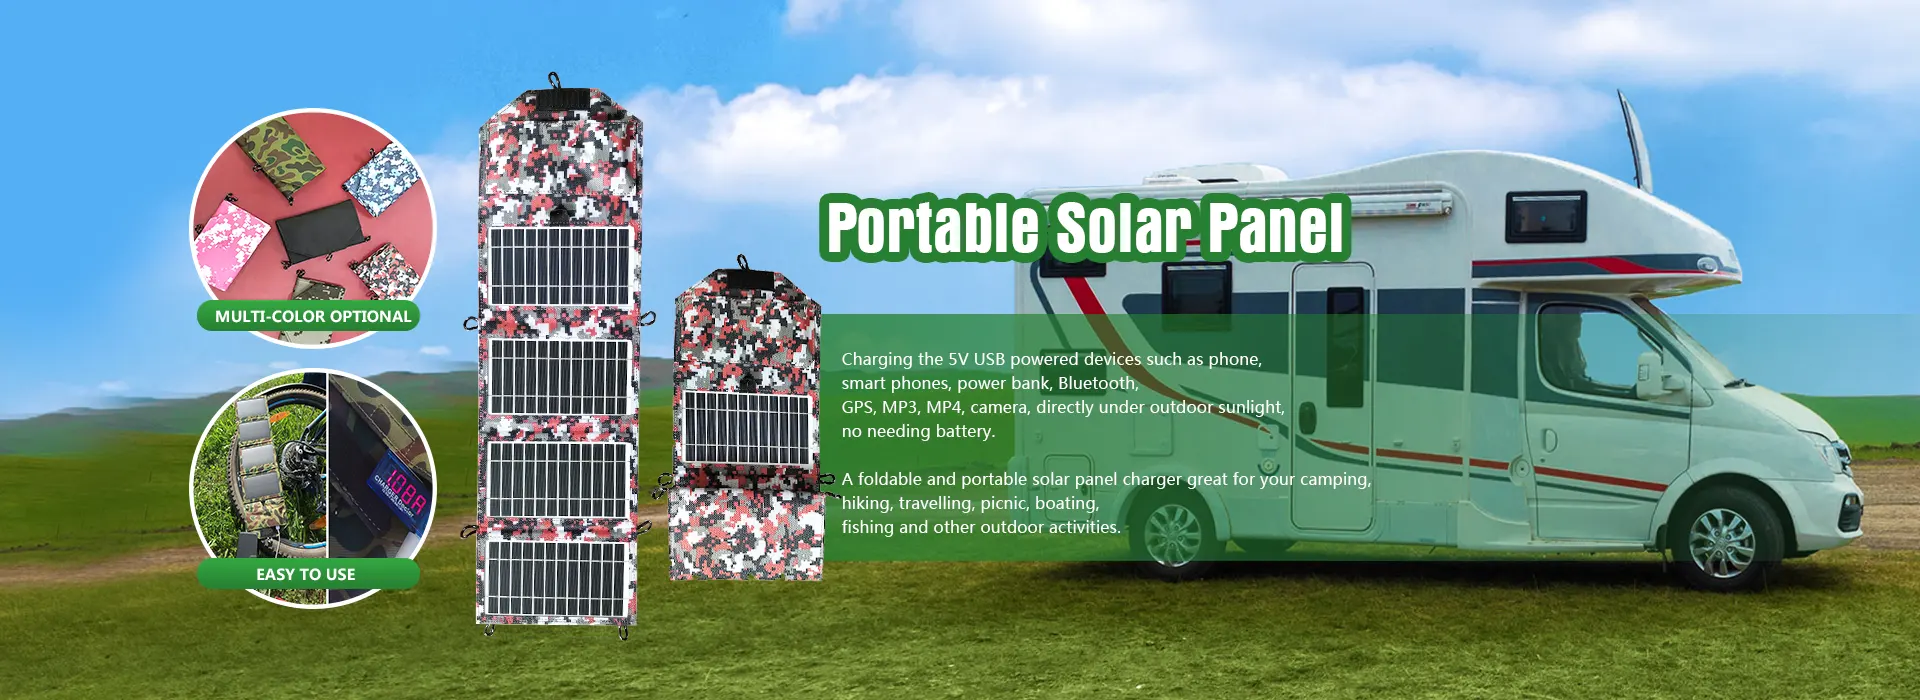 Mga Tagagawa ng Portable Solar Panel